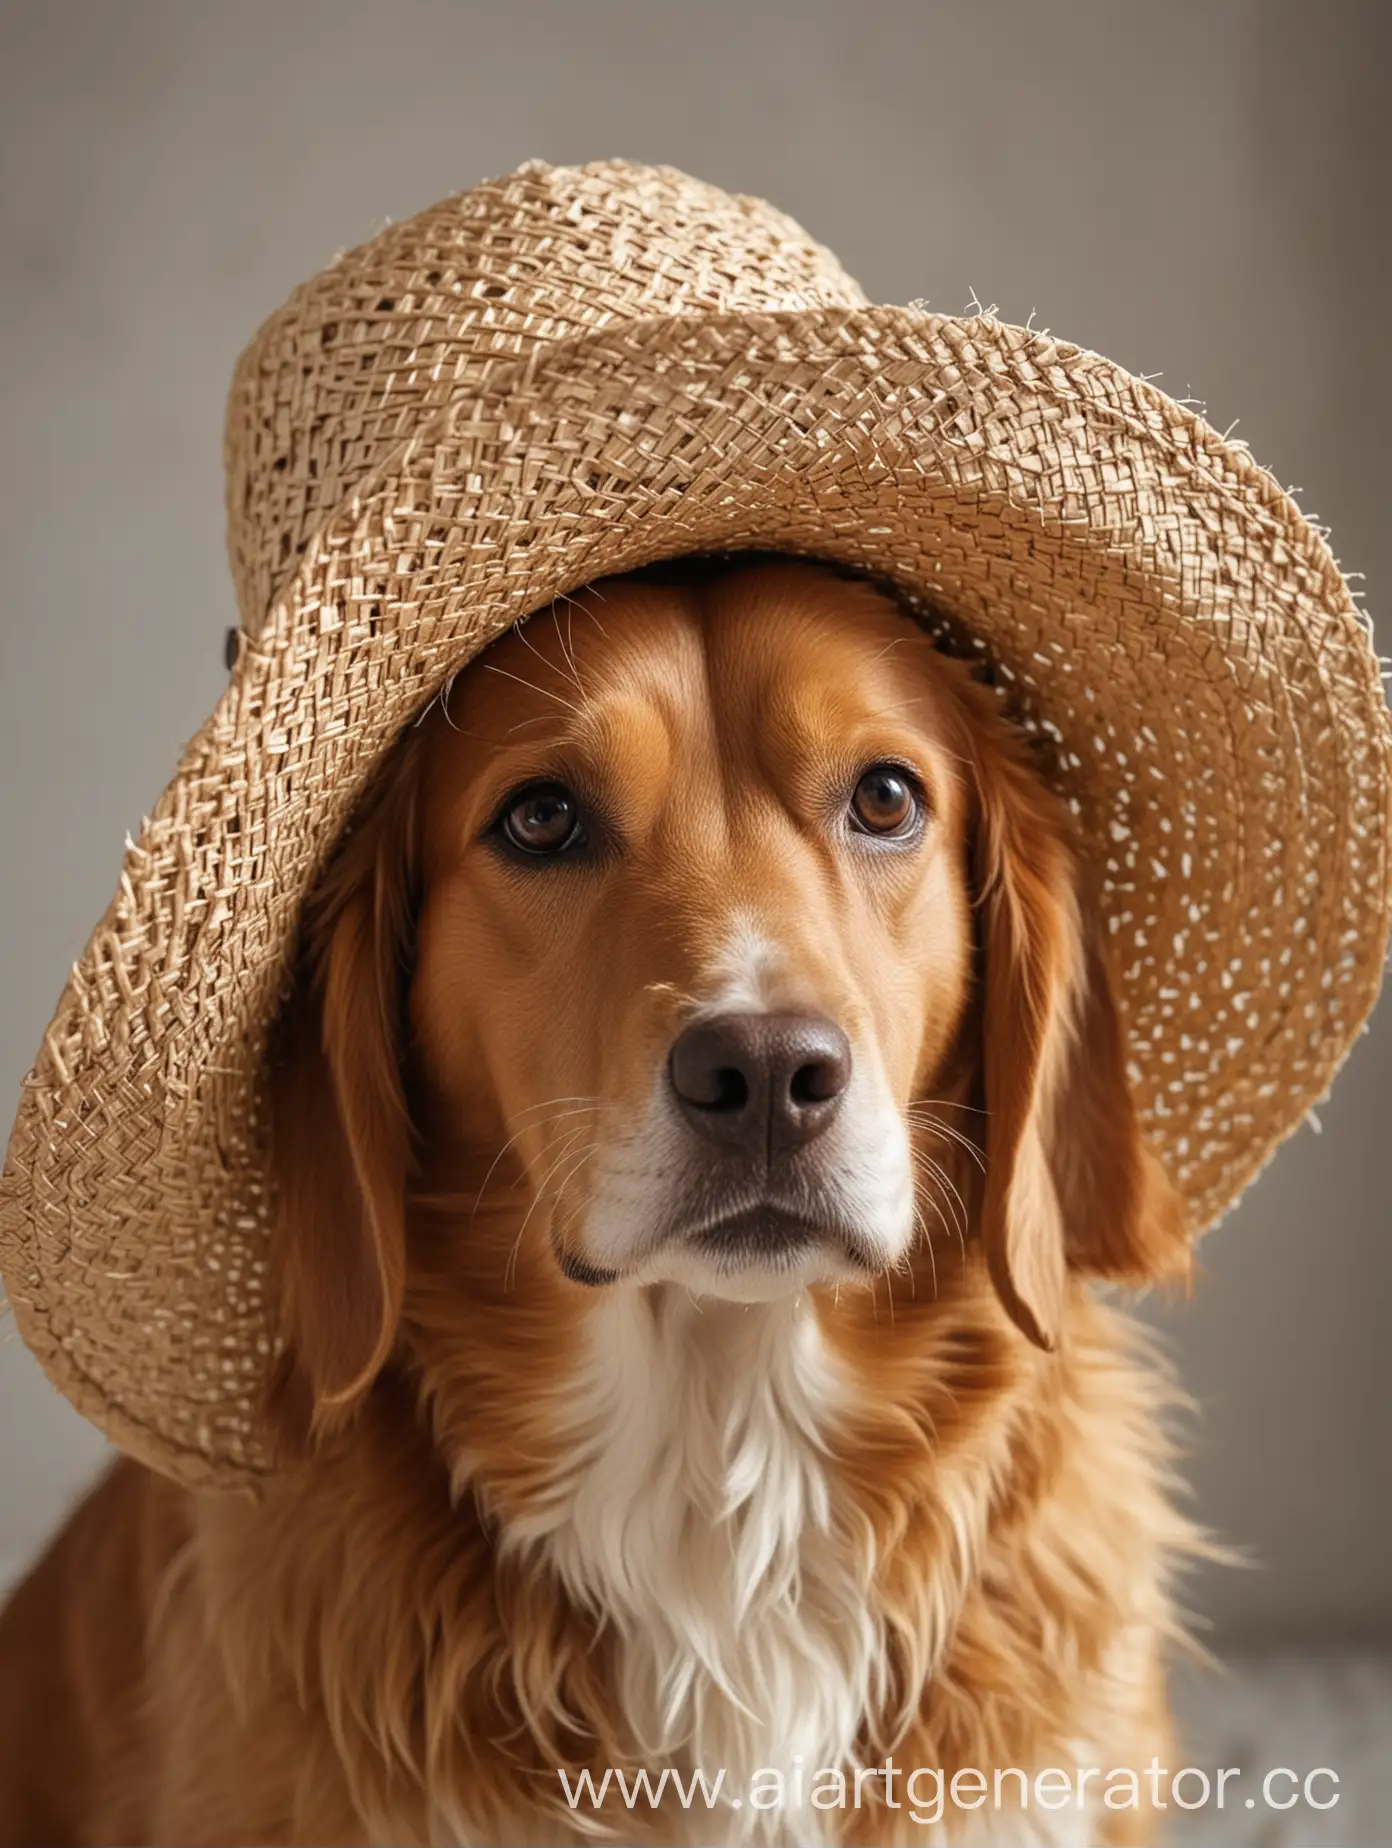 собака в соломенной шляпе, которая смотрит в кадр, при этом чтобы шляпа не выходила из кадра